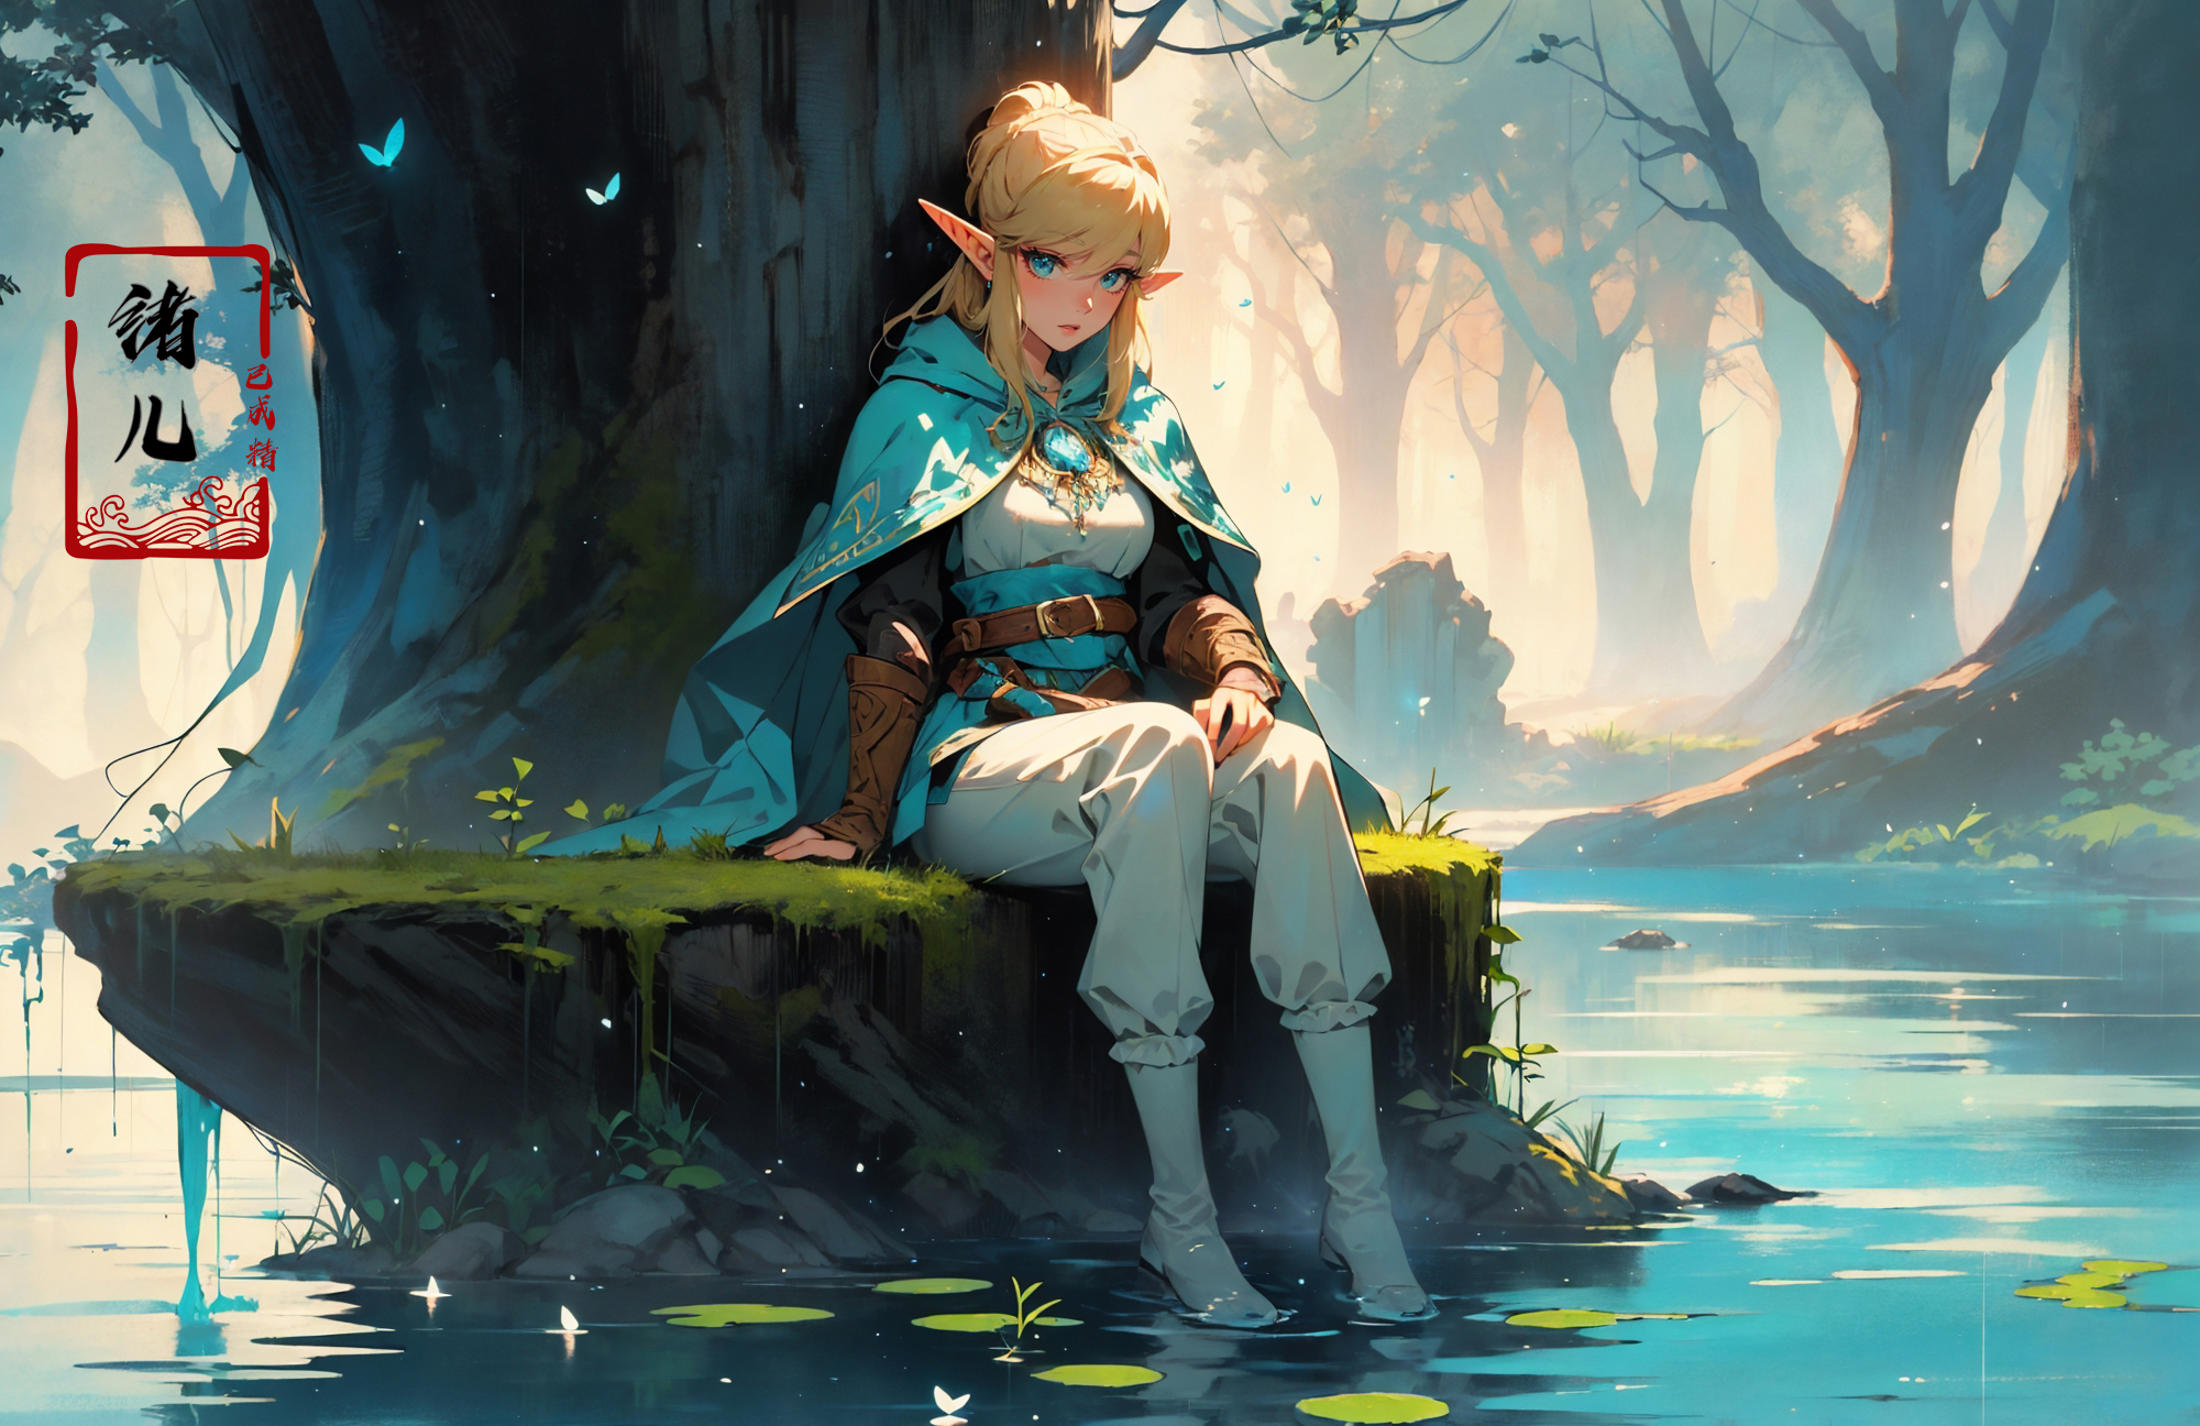 绪儿-塞尔达Zelda-style image by XRYCJ